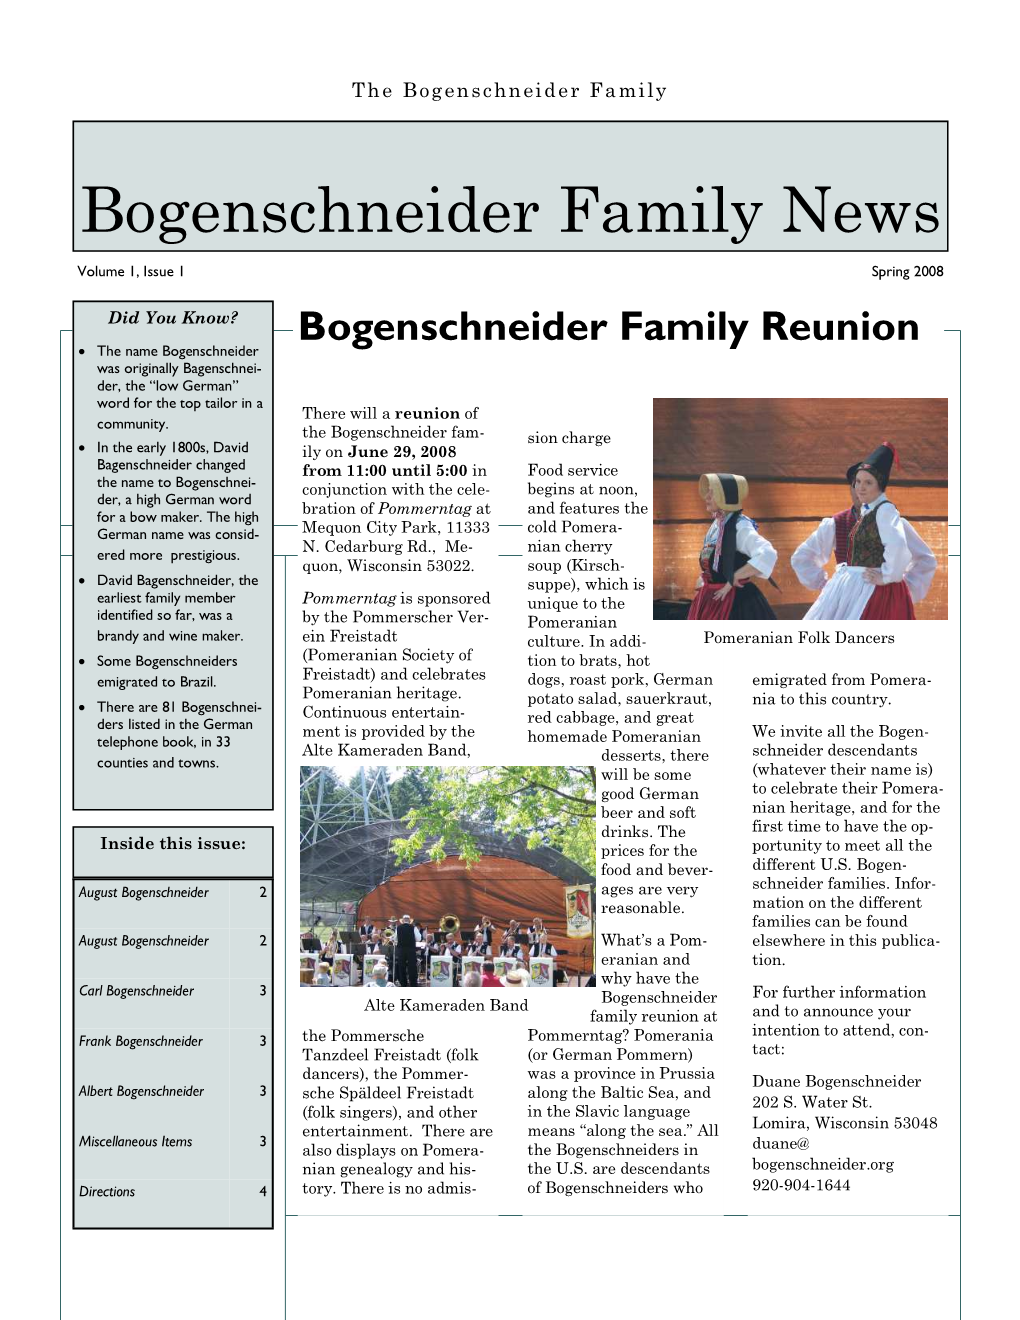 Bogenschneider Family News, Vol. 1, No. 1, Spring 2008